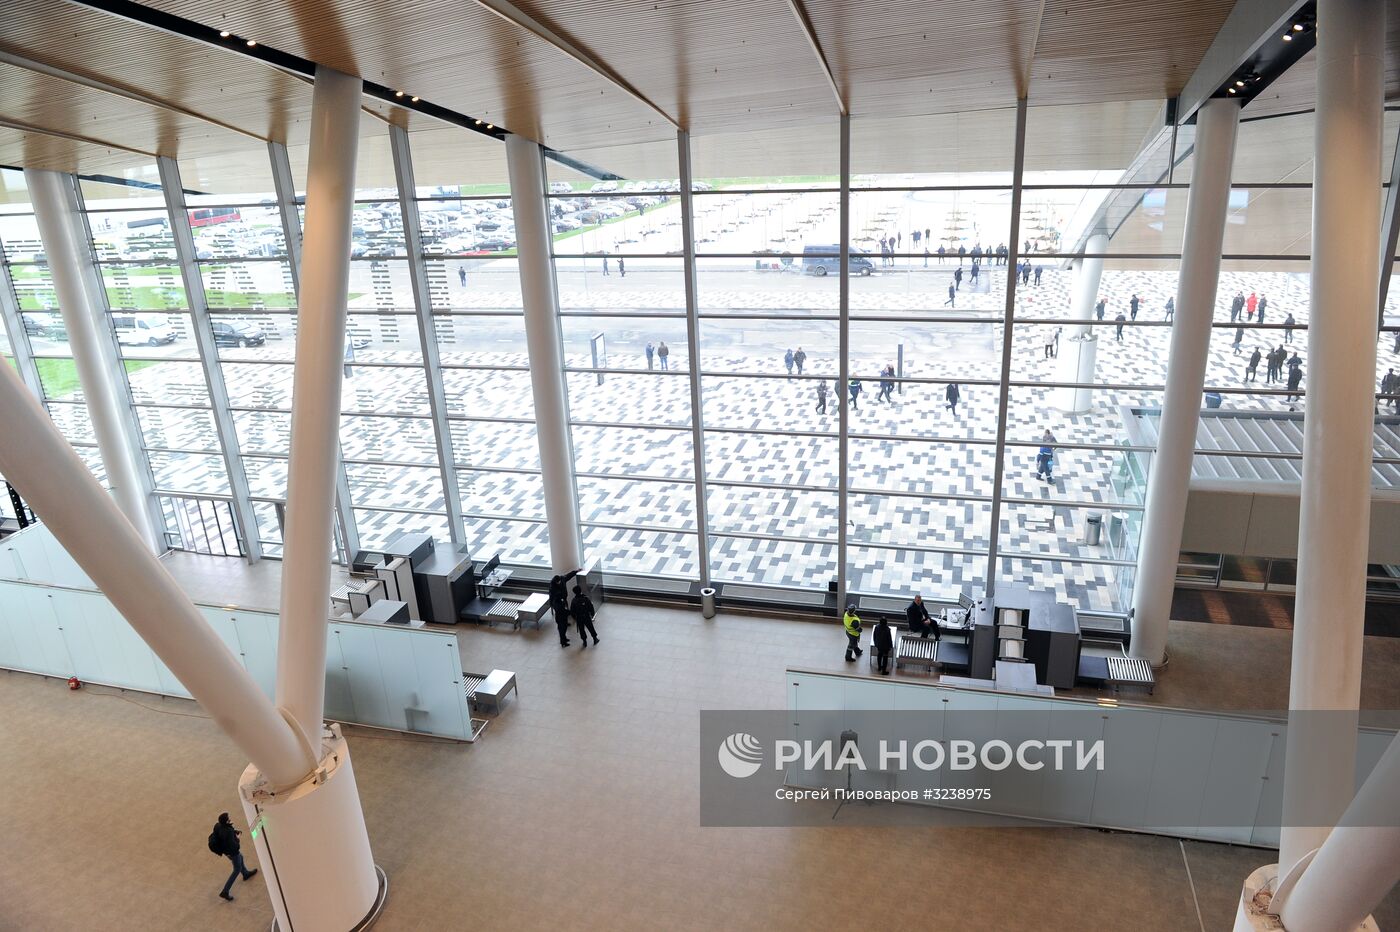 Первый рейс в новом аэропорту "Платов" в Ростове-на-Дону